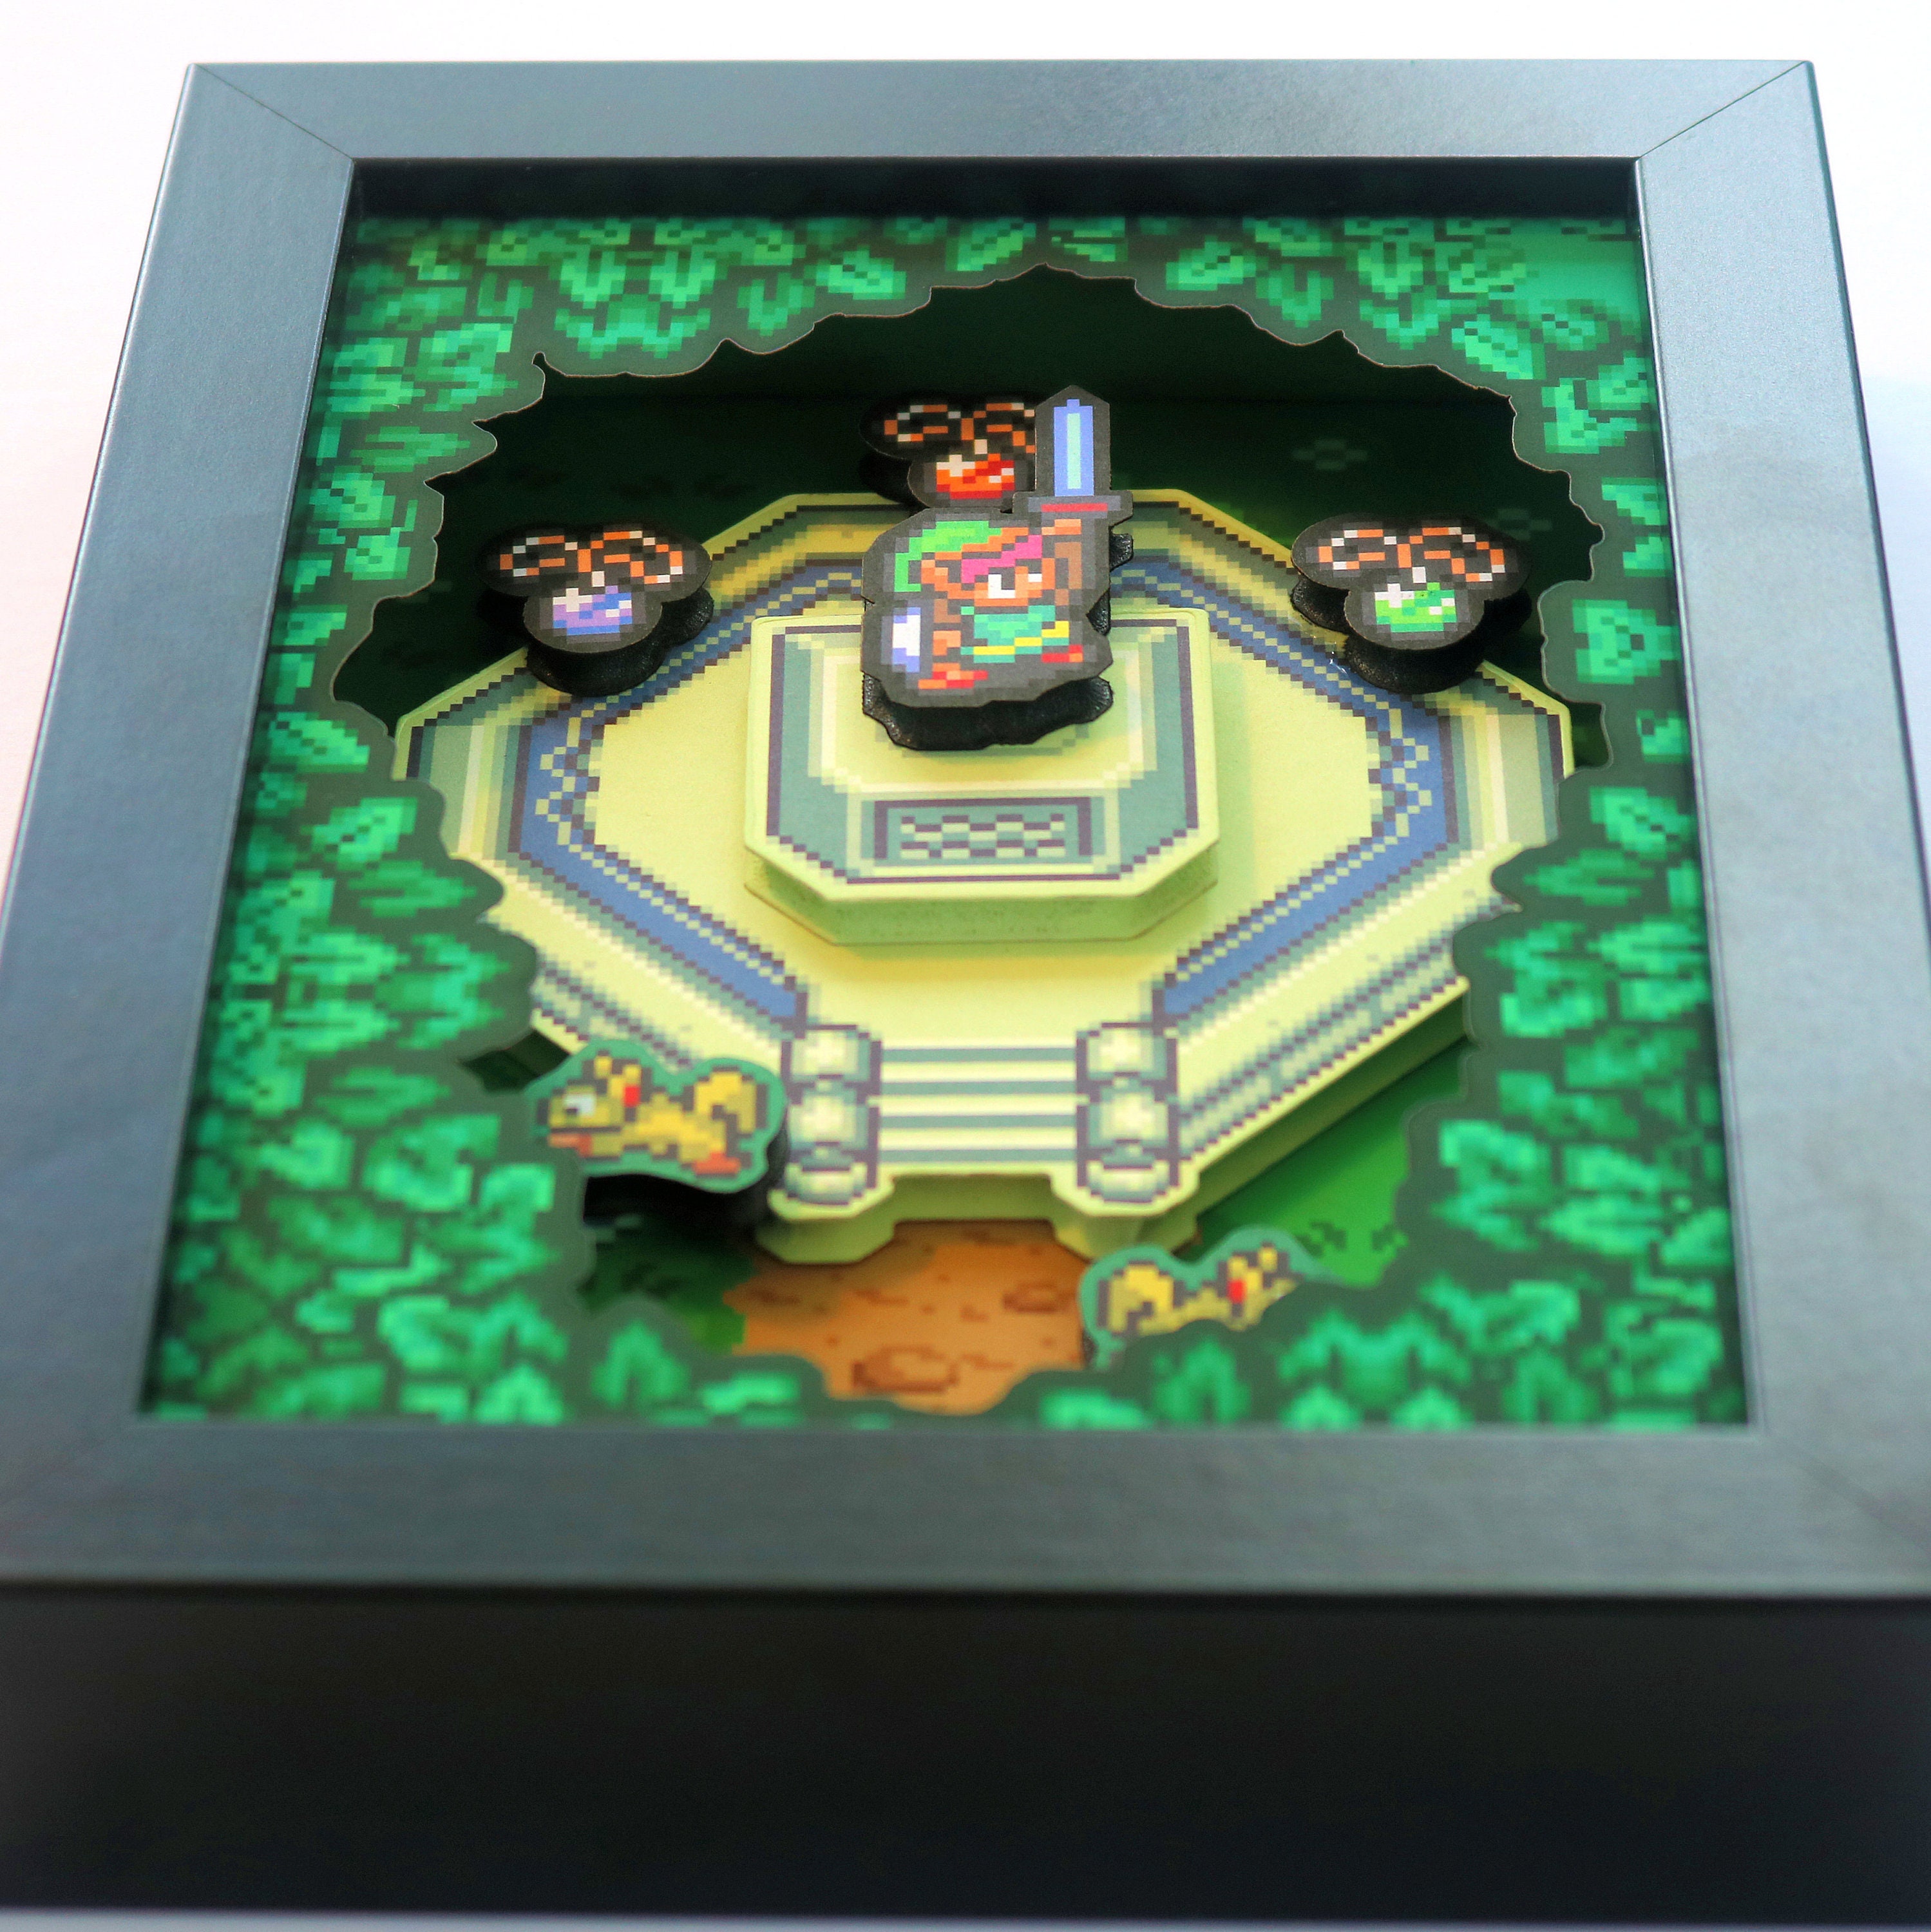 The Legend of Zelda Shadowbox Nintendo Start Screen Zelda Gifts 